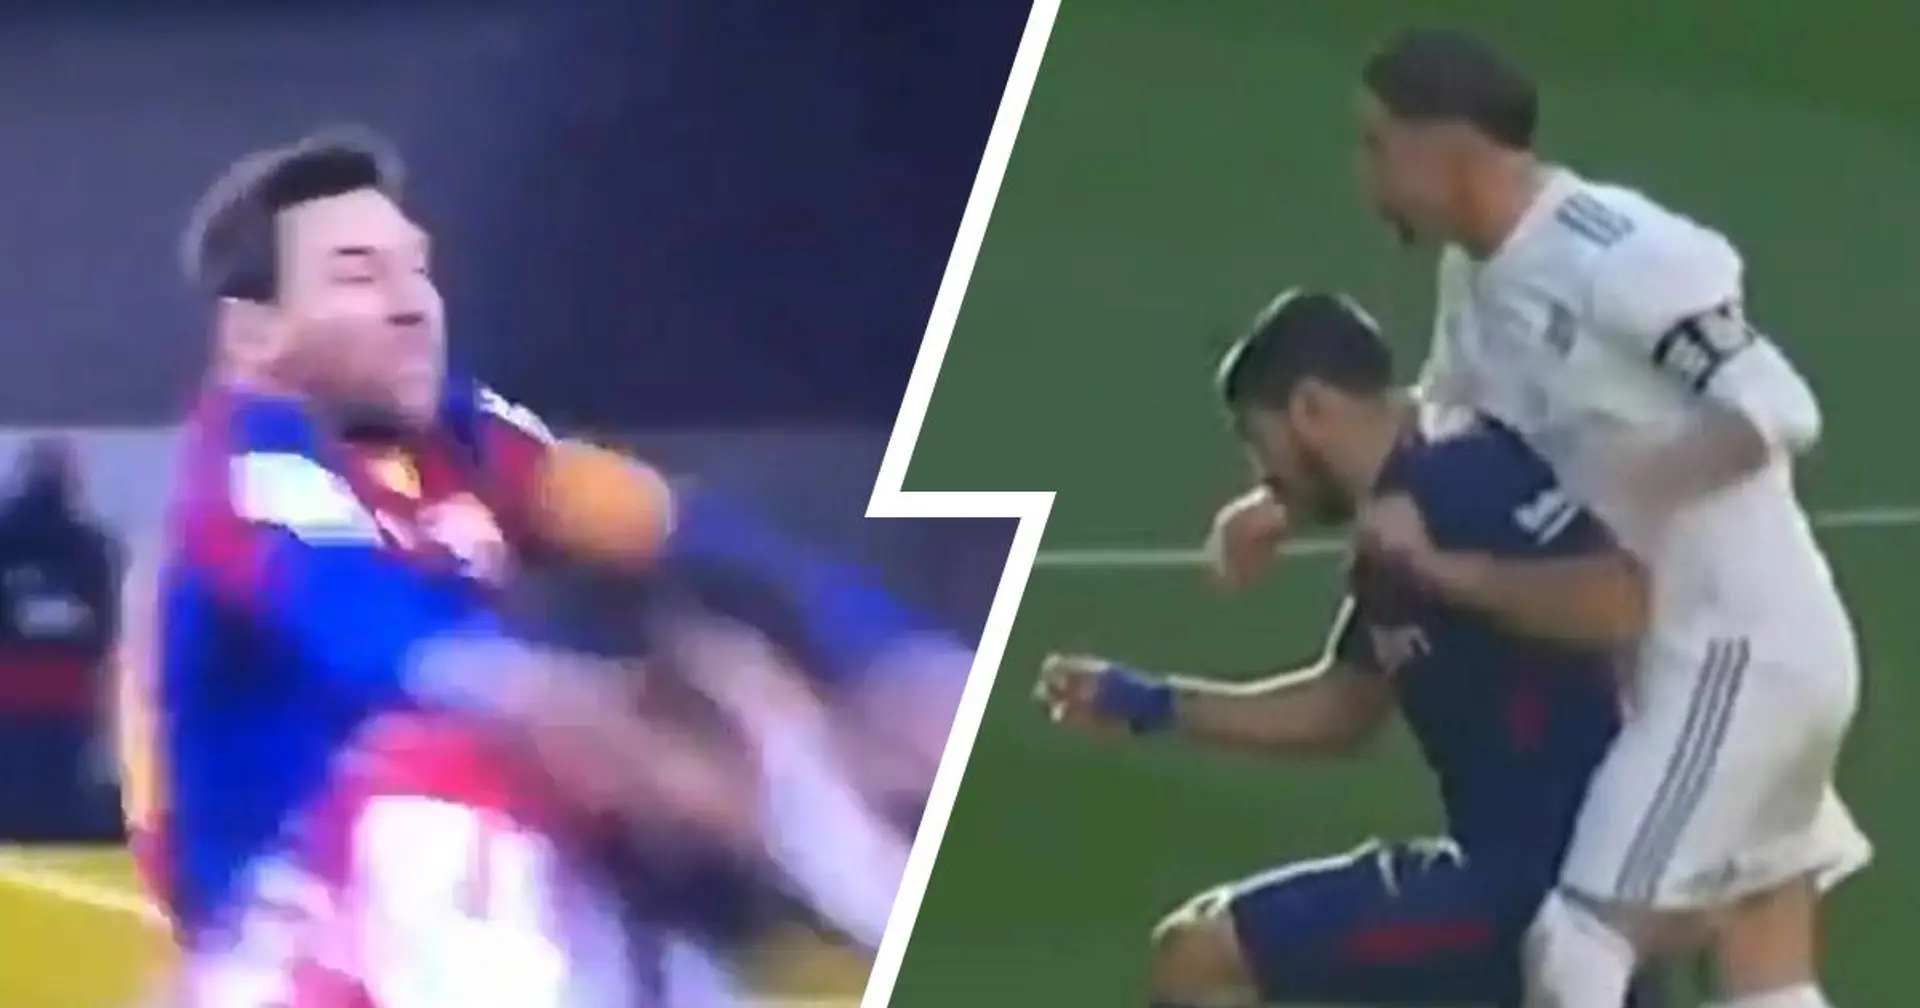 Des images montrent que Sergio Ramos n'a récolté qu'un carton jaune pour un coup très brutal contre Luis Suarez tandis que Leo Messi a été expulsé contre Bilbao